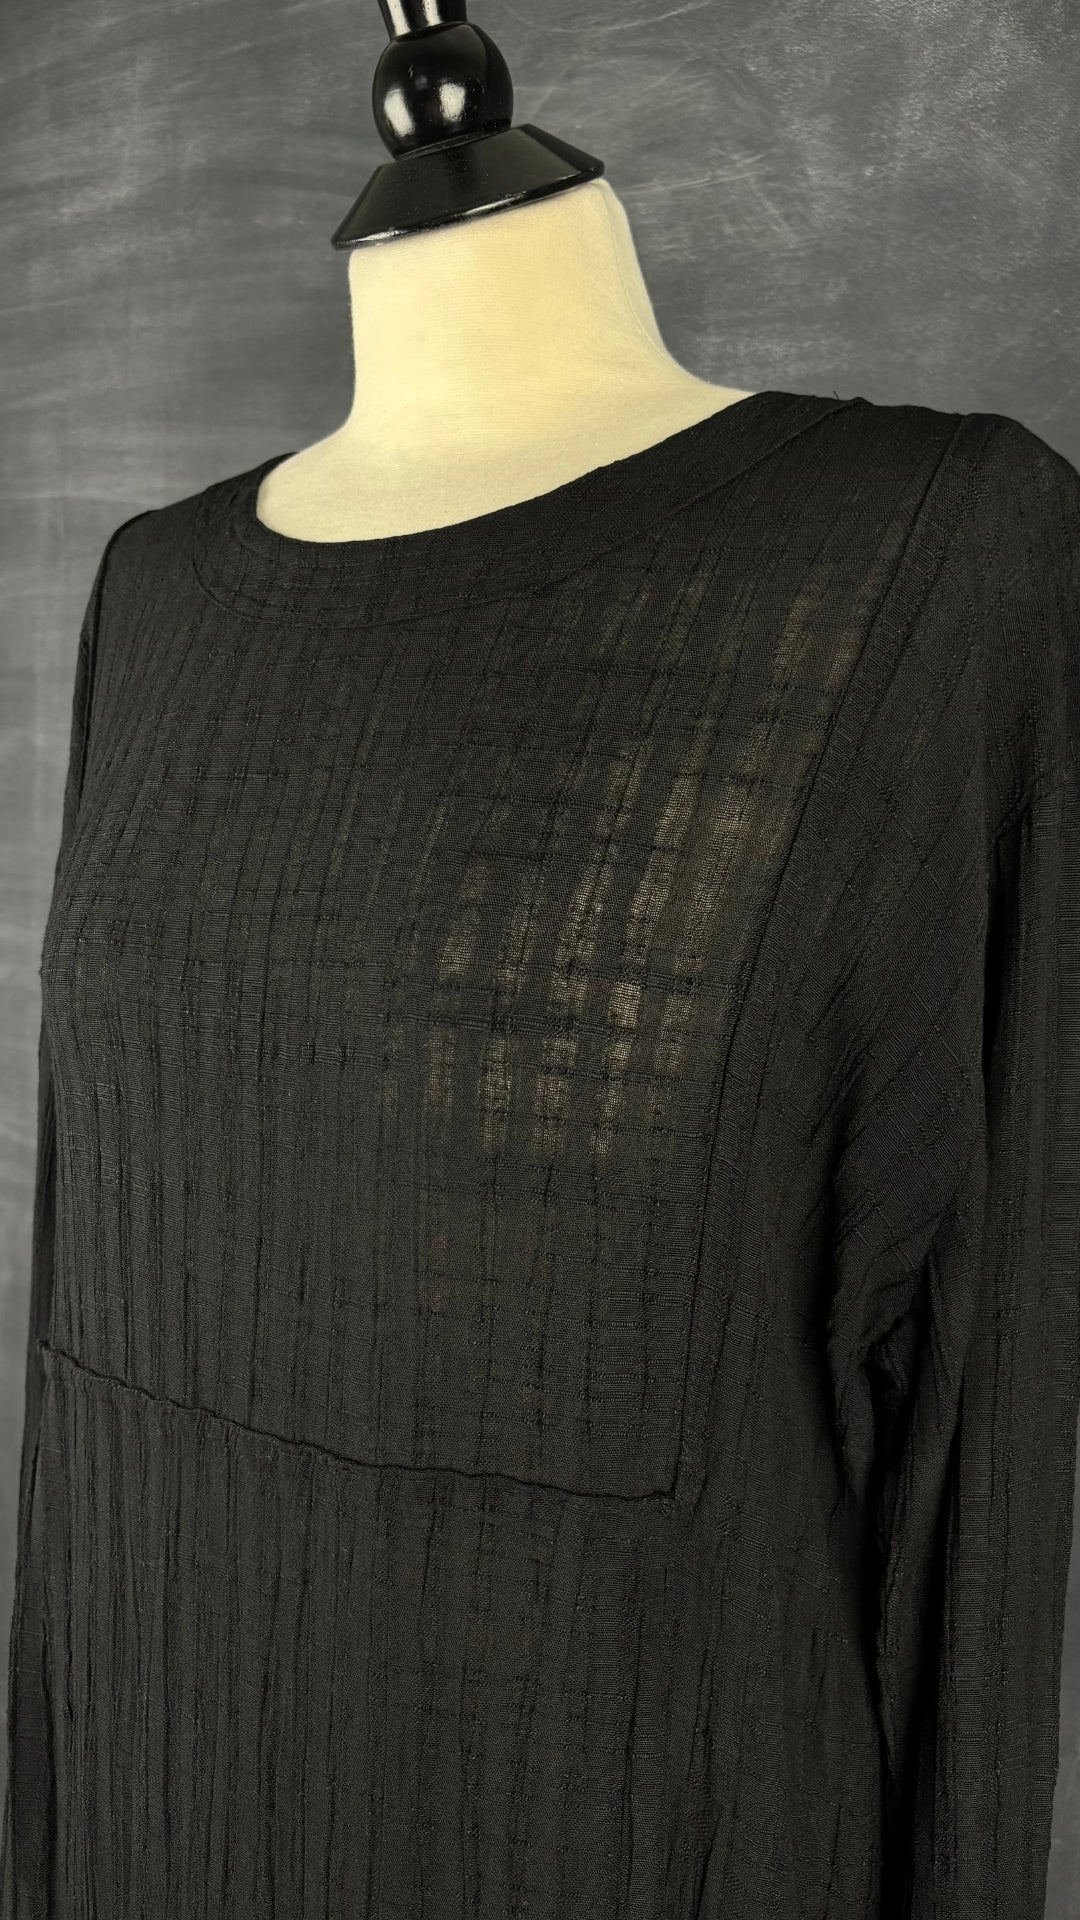 Robe longue noire texturée en mélange de lin Kaliyana, taille m/l. Vue de l'encolure.